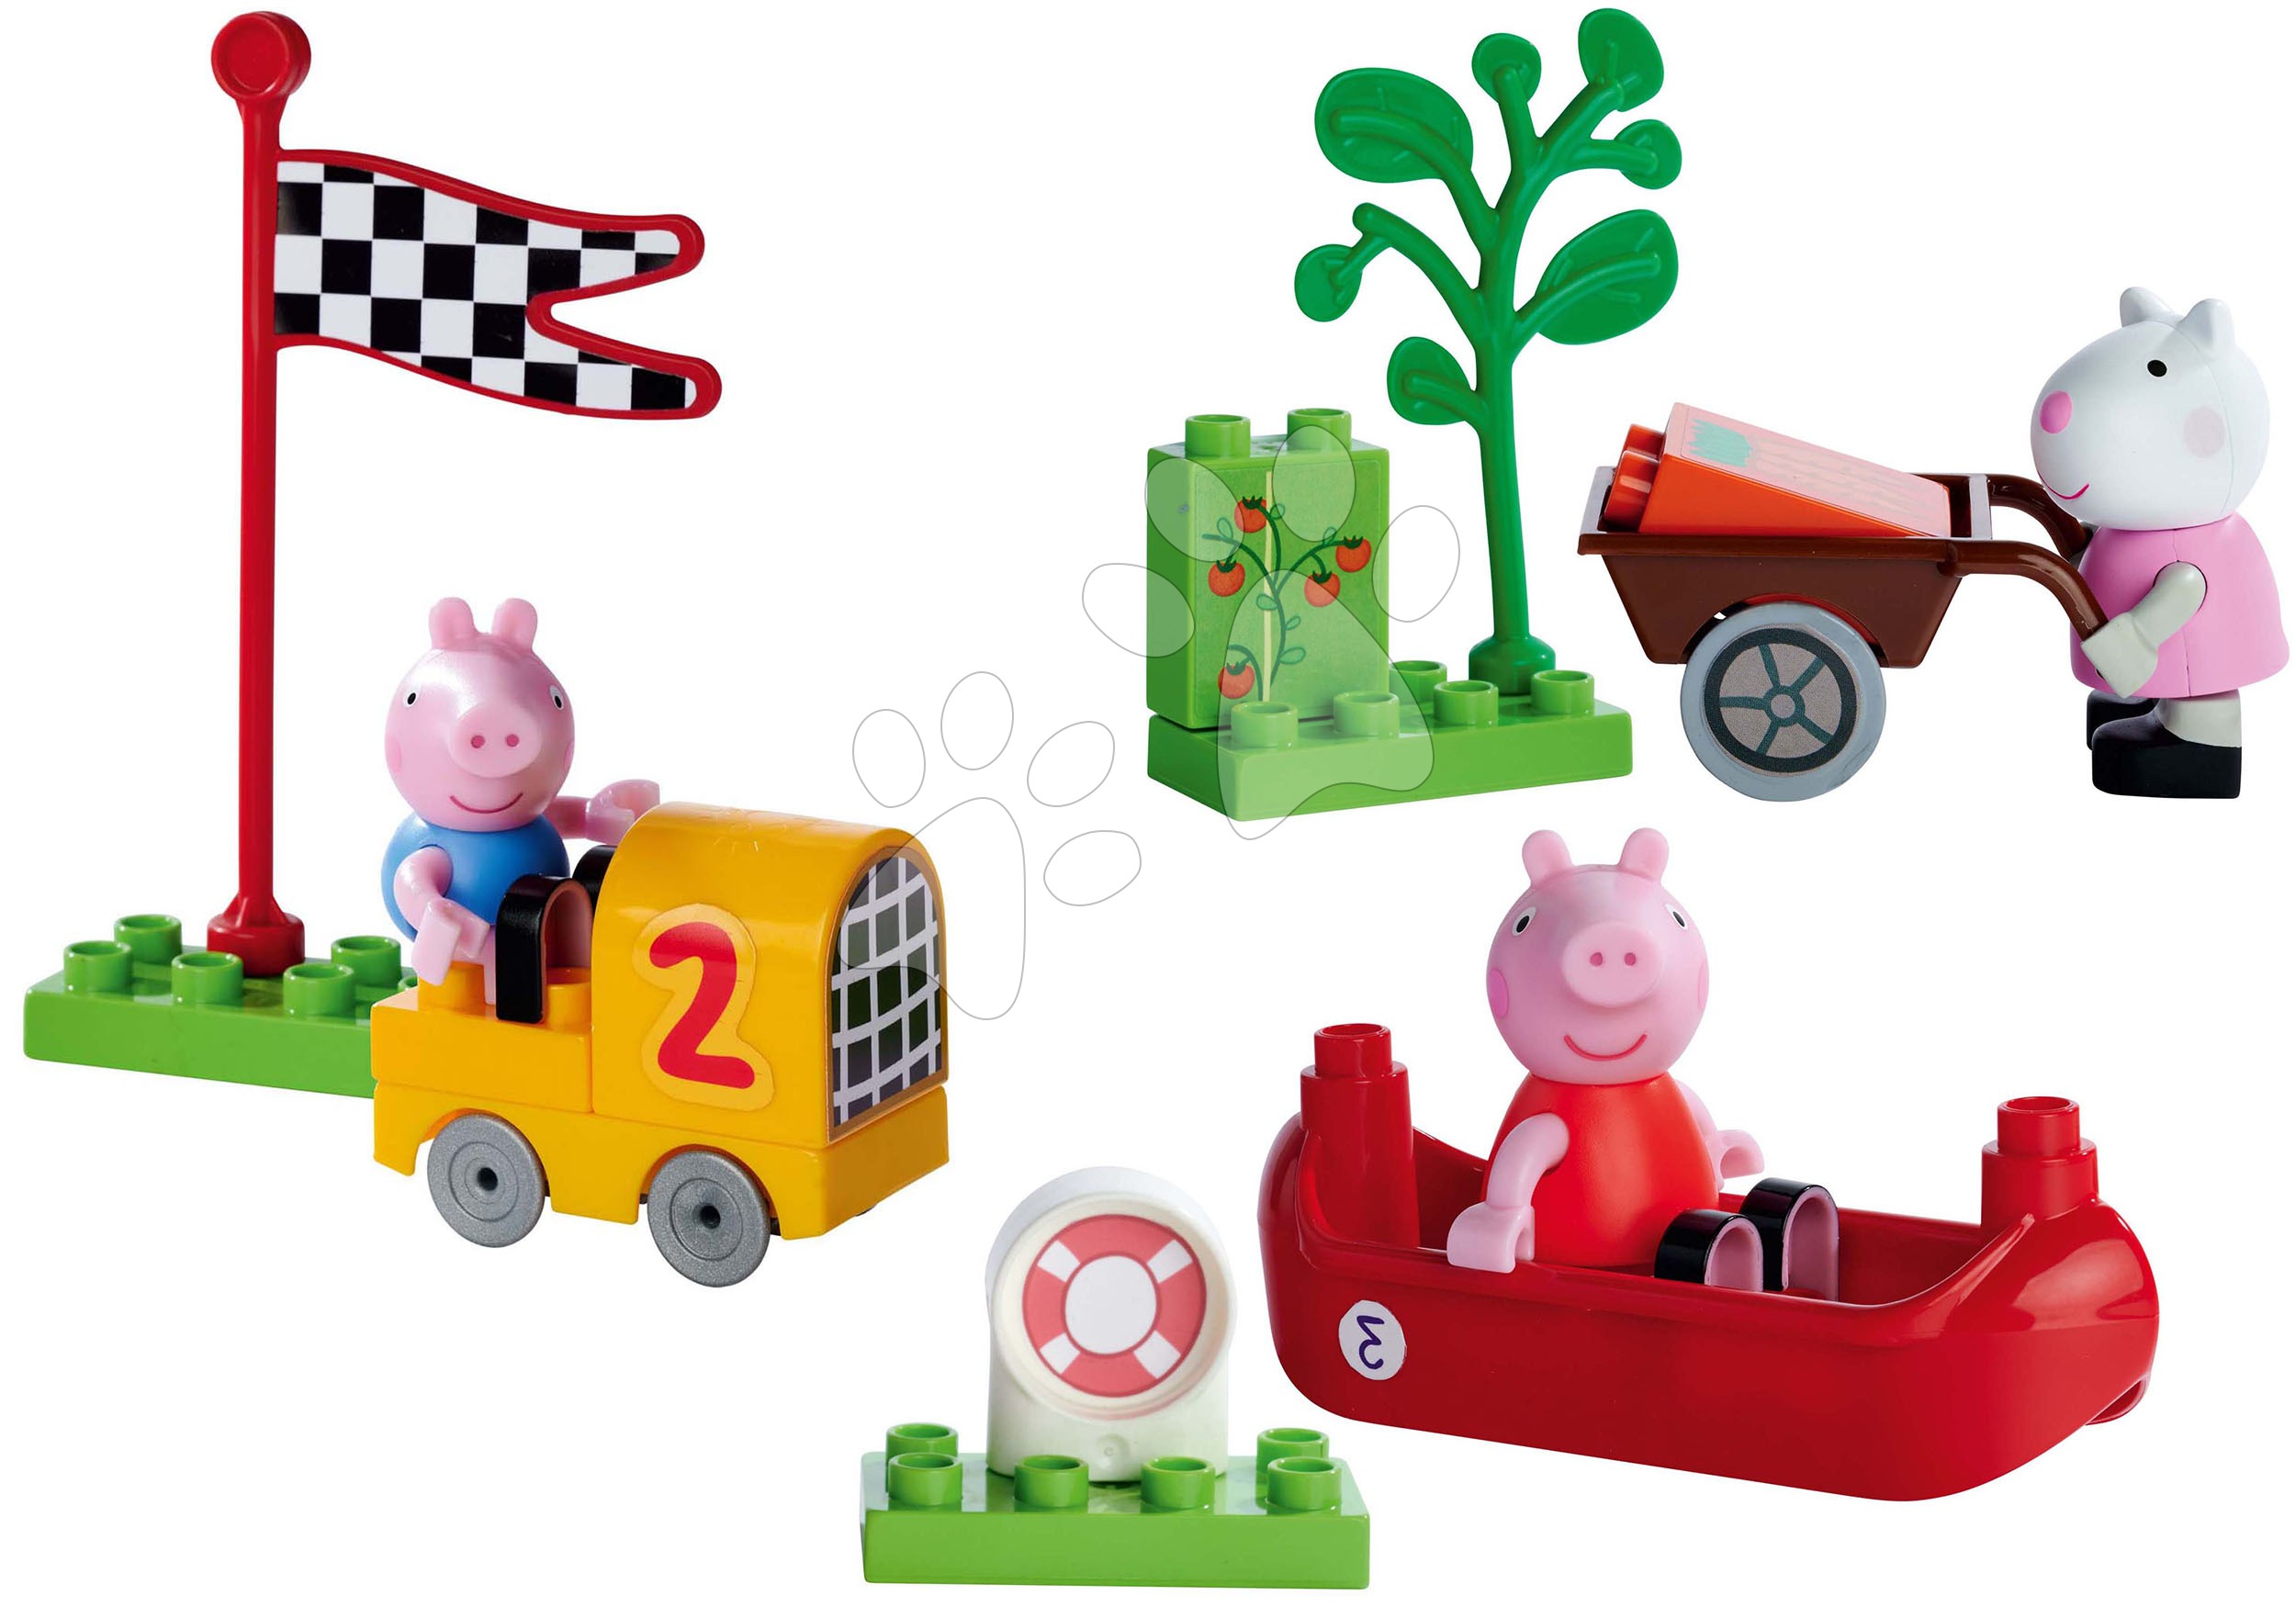 Építőjátékok BIG-Bloxx mint lego - Építőjáték Peppa Pig Starter Set PlayBig Bloxx BIG figurák - 3 fajta készlet 1,5-5 évesnek